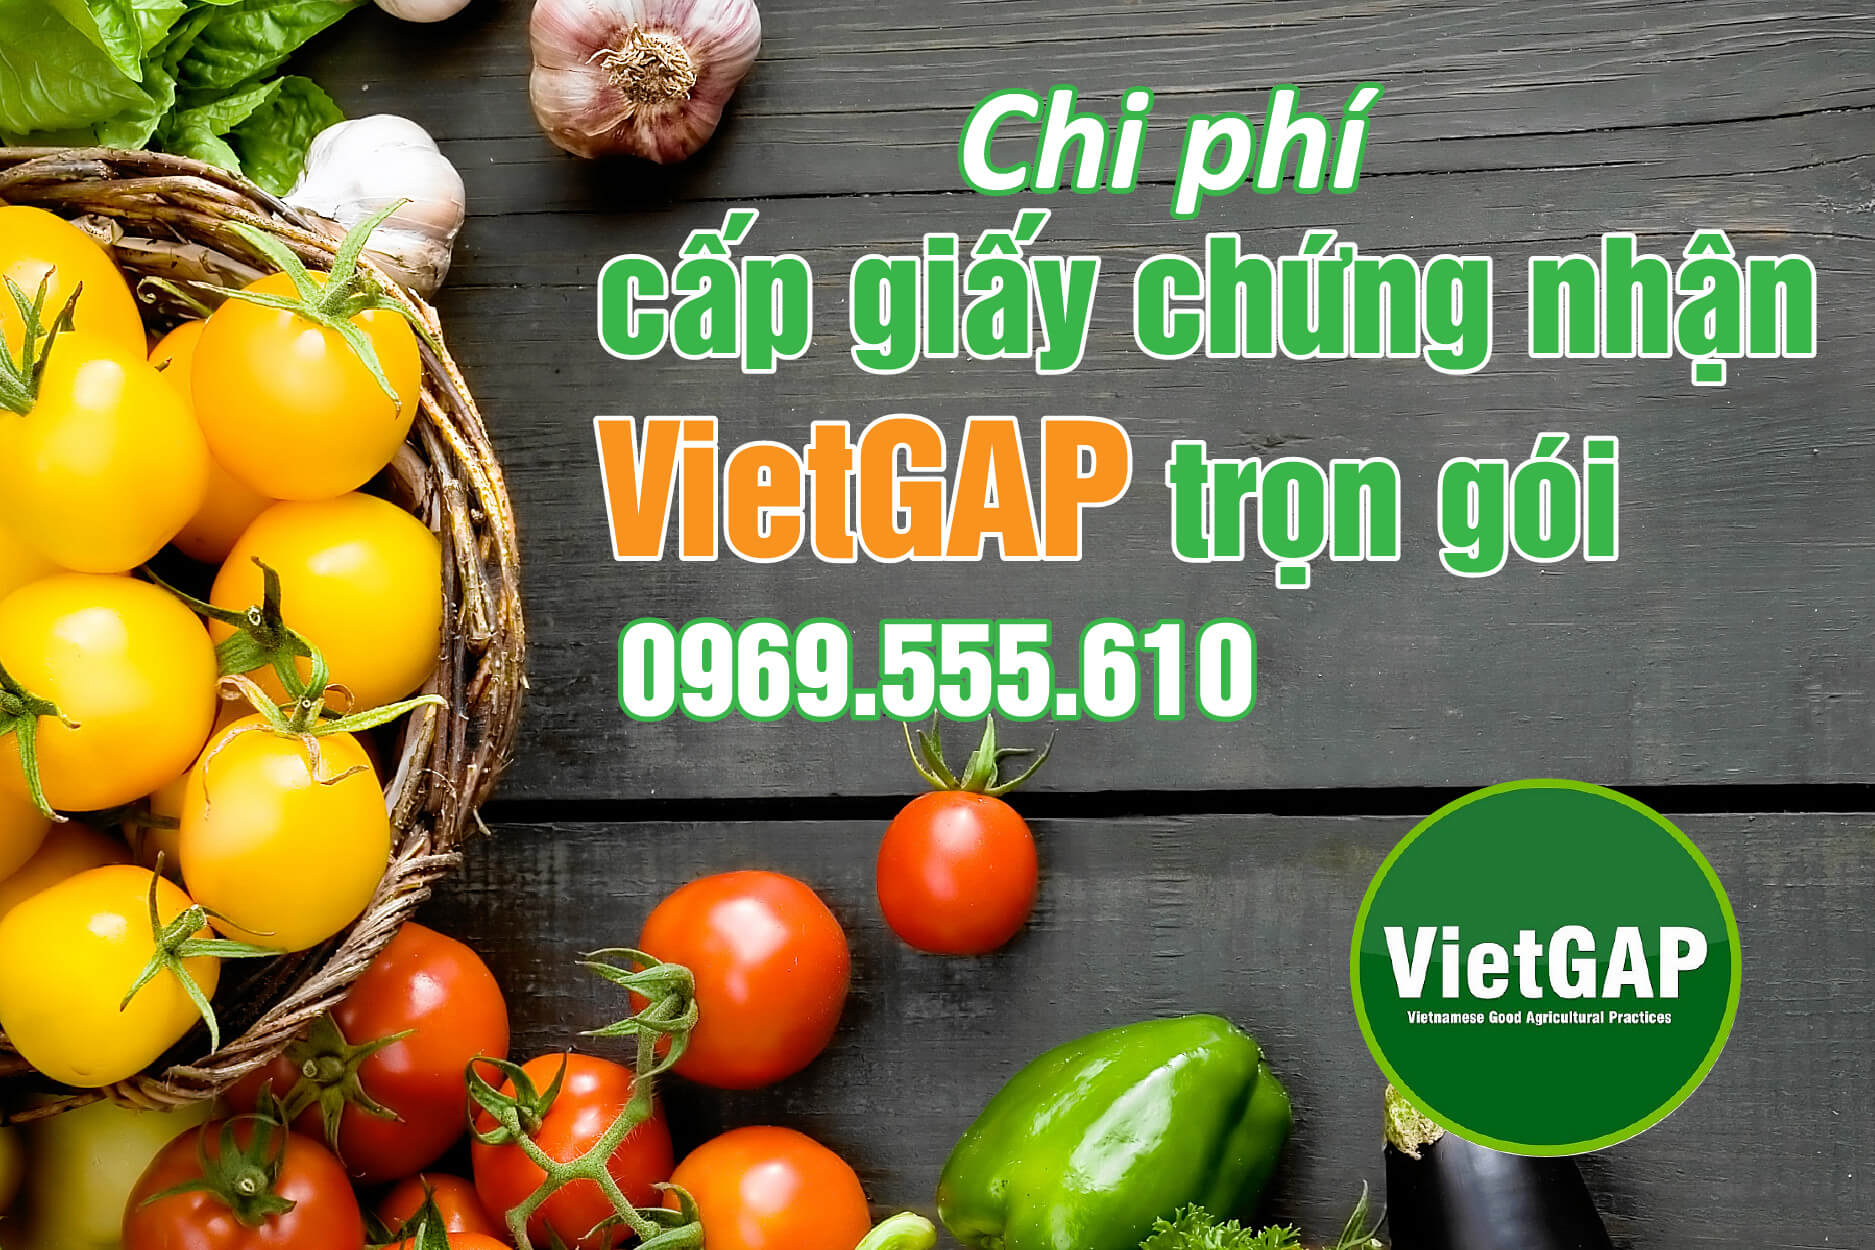 Chi phí cấp giấy chứng nhận VietGAP